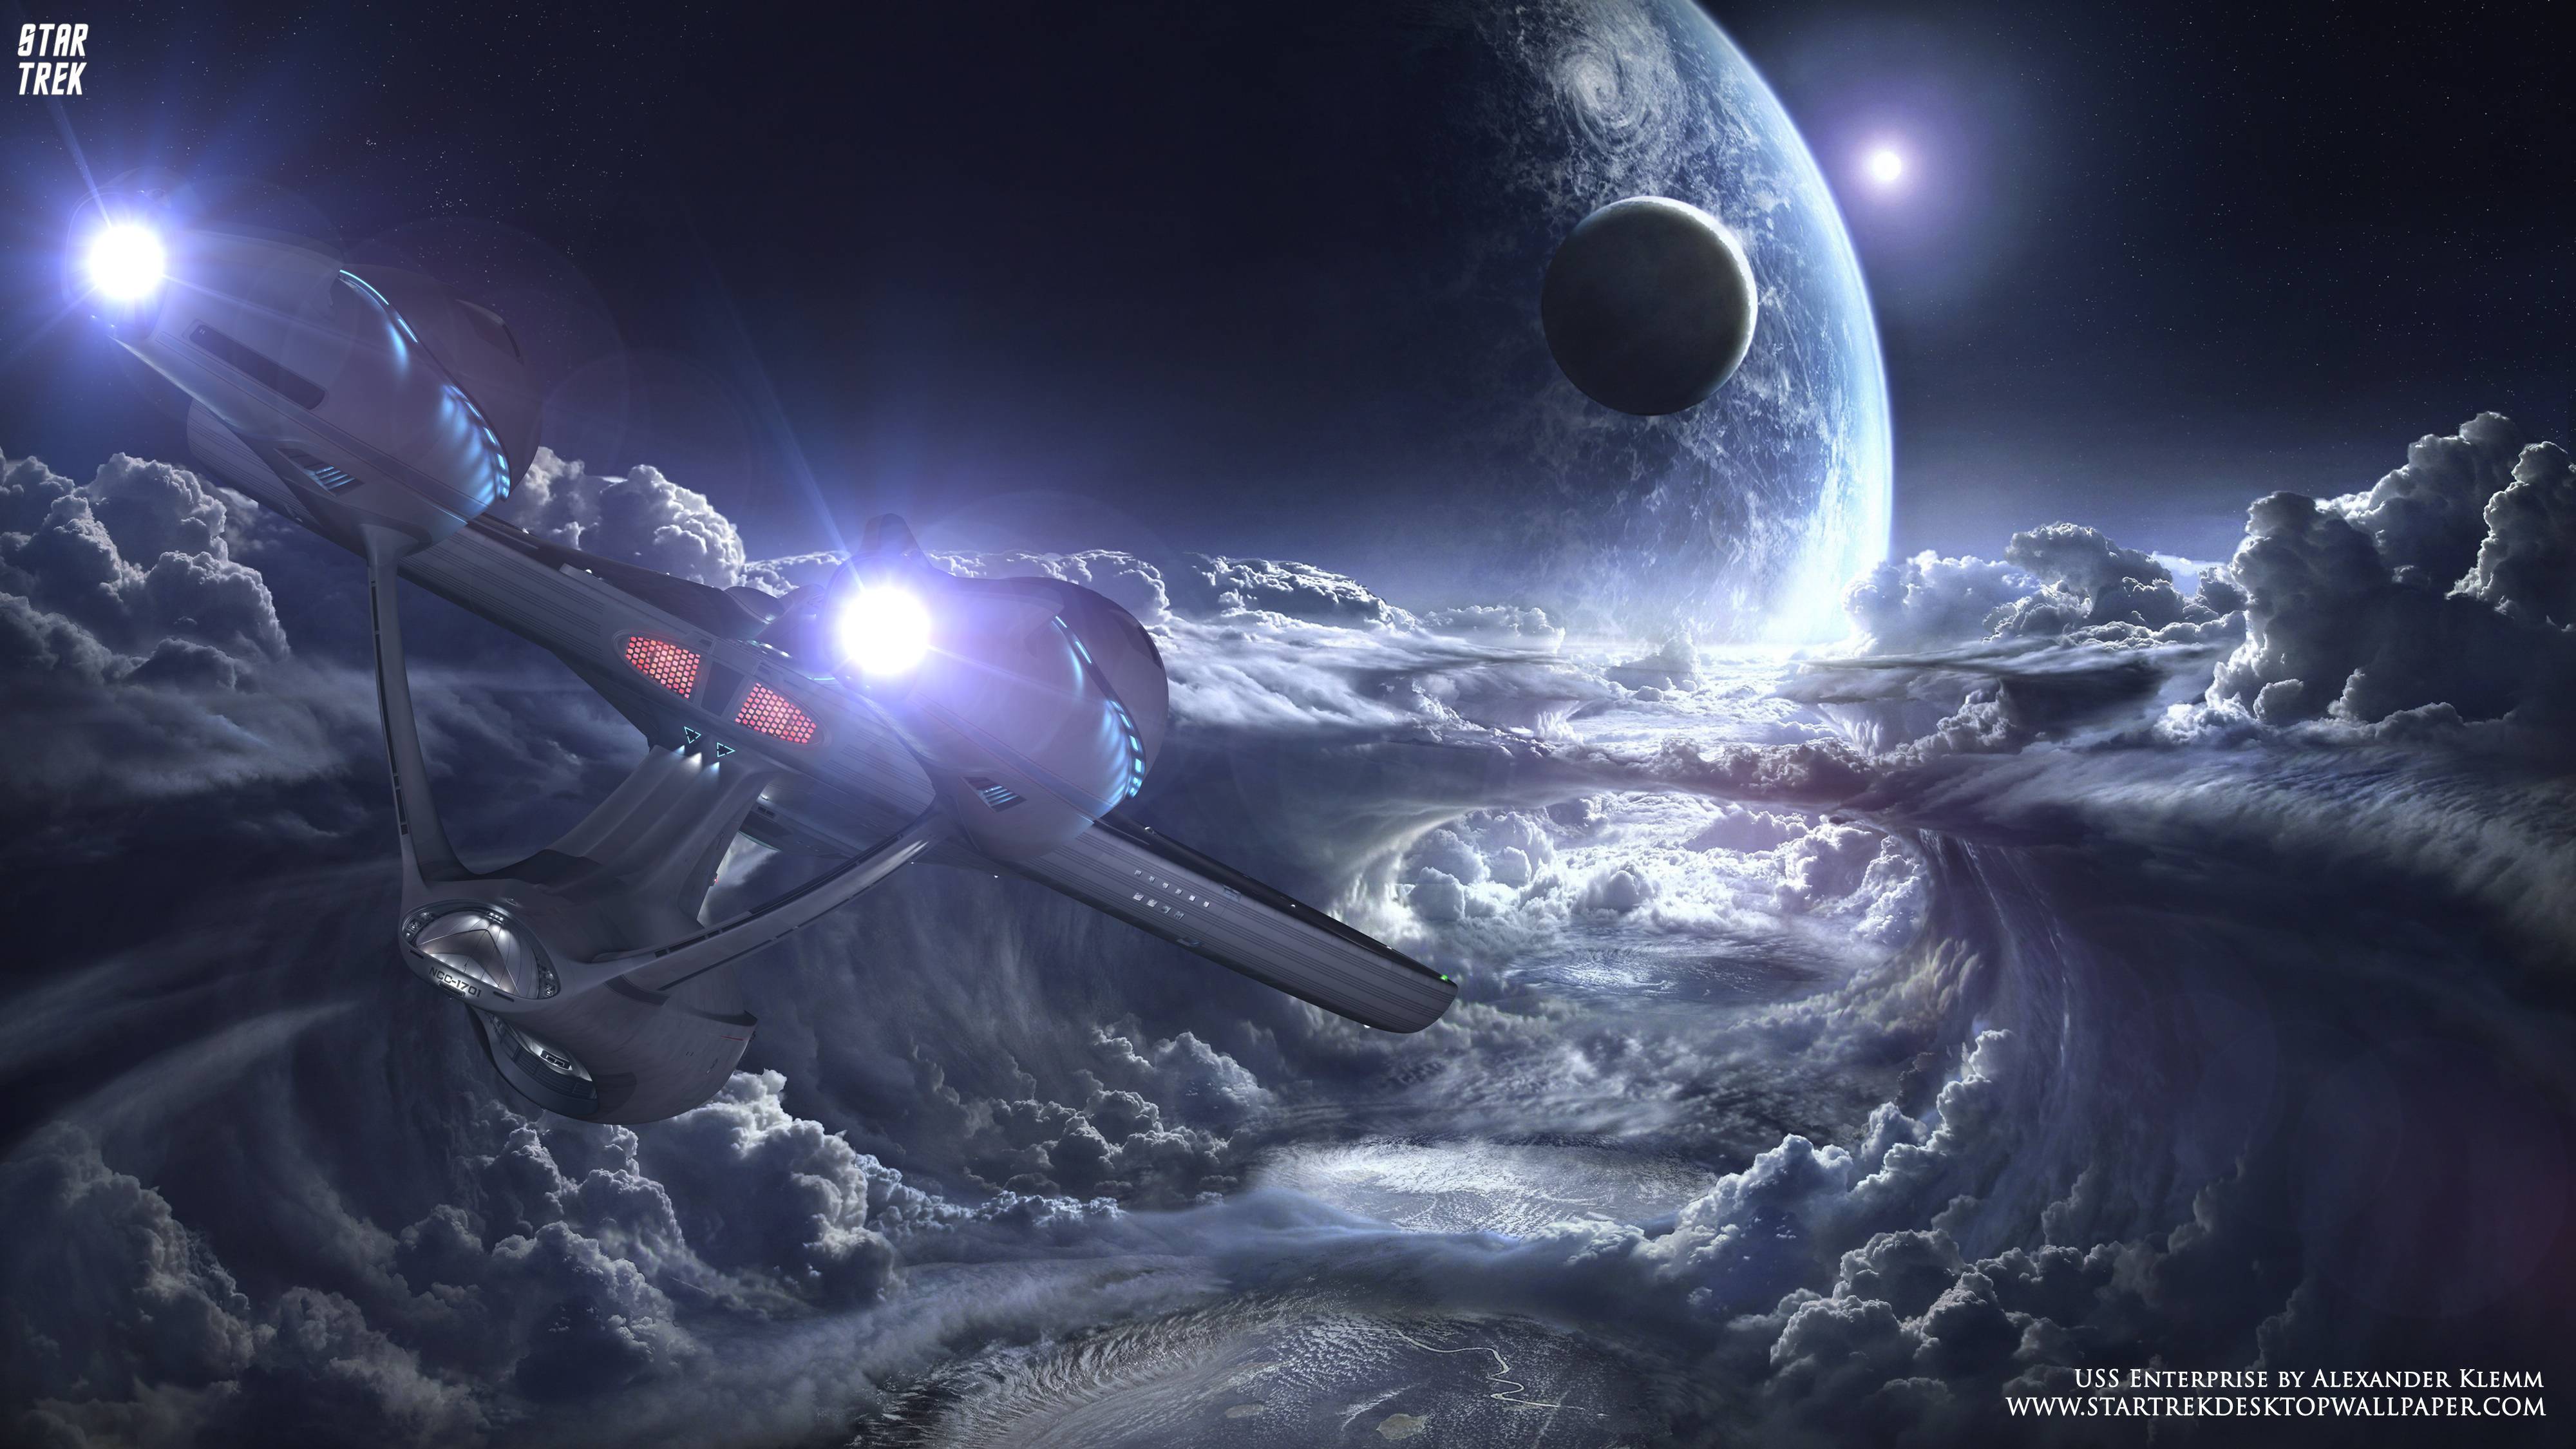 Star Trek USS Enterprise NCC 1701 Over New Planet, Free Star Trek